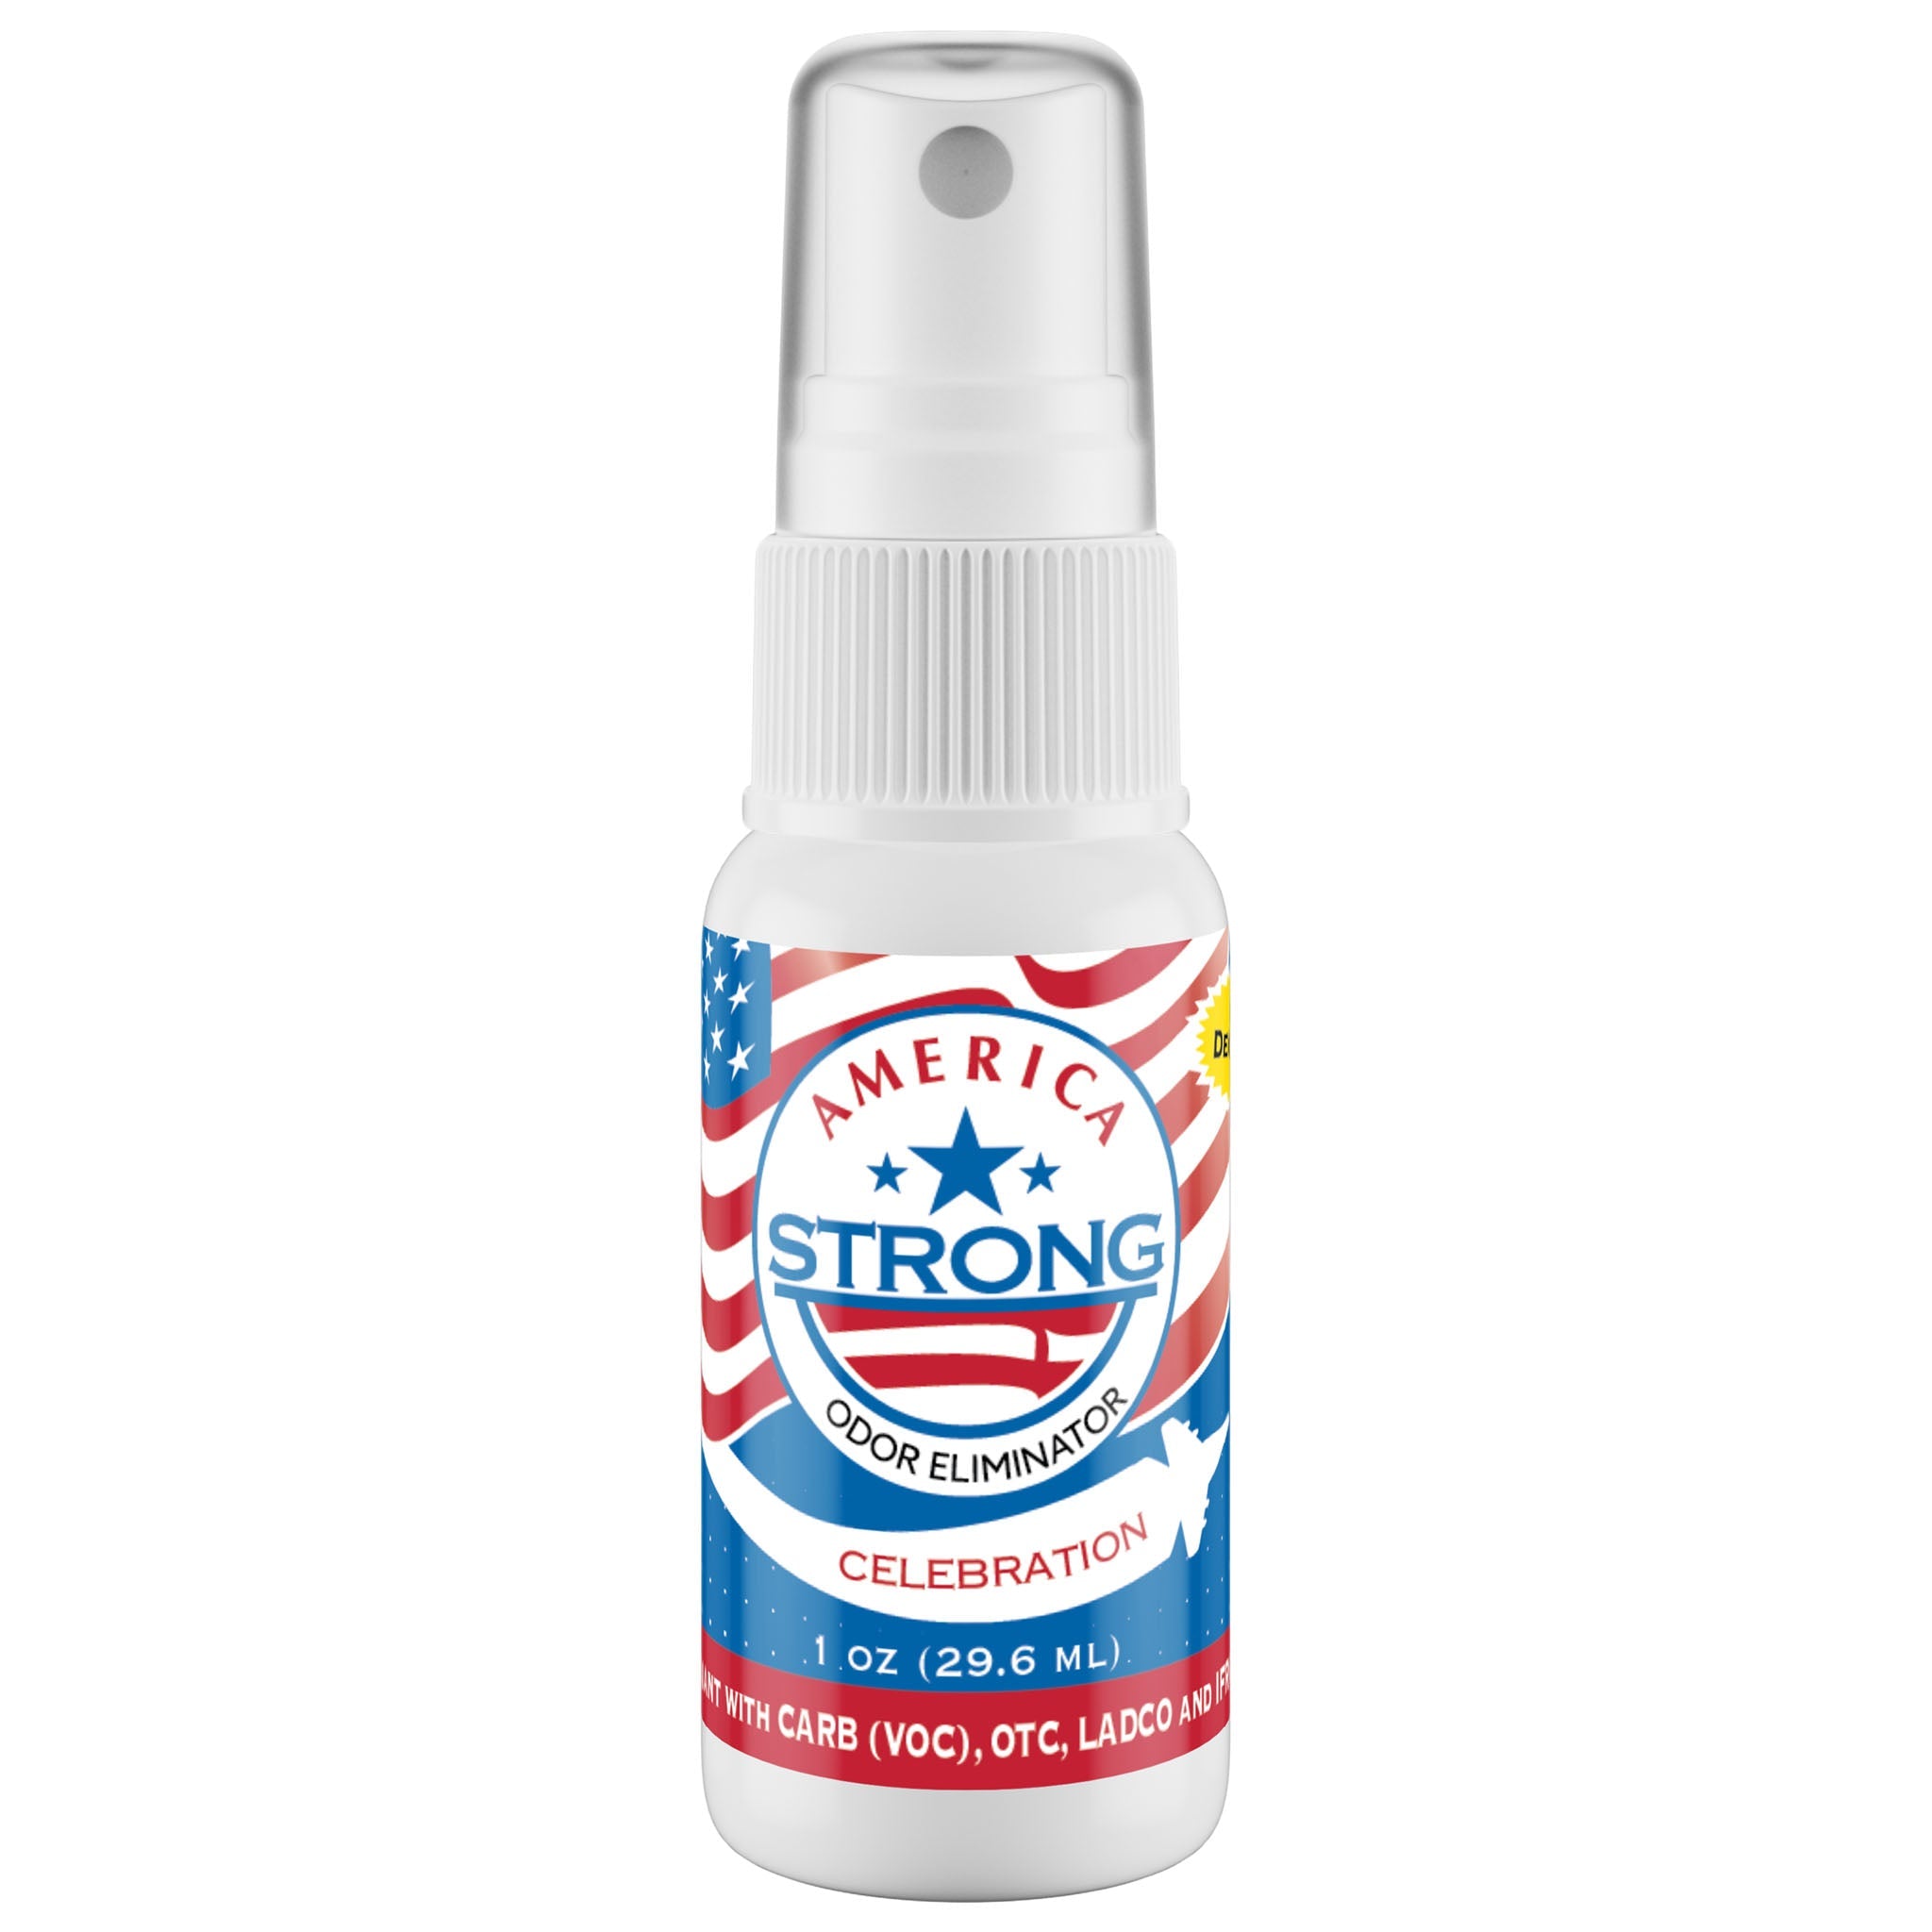 America Strong Odor Eliminator - Celebration Scent